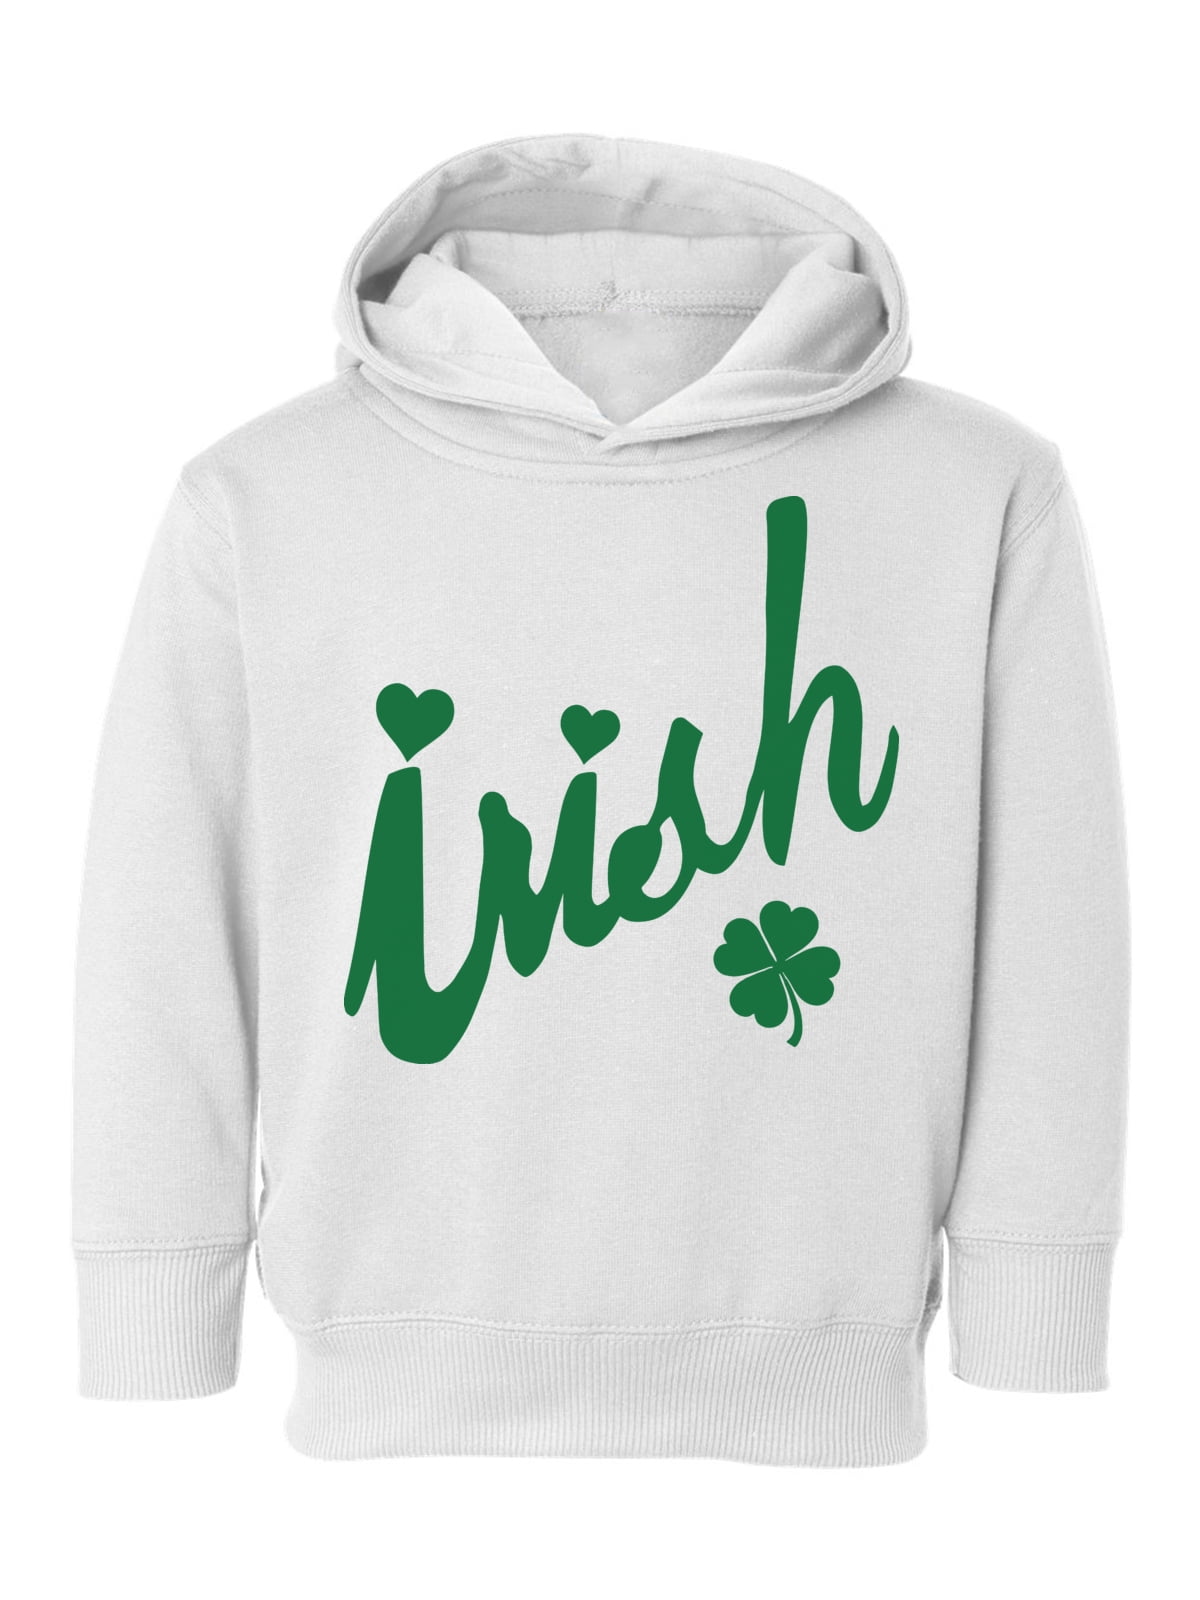 St Patricks Day Irish American Shamrock Toddler Hooded Sweatshirt